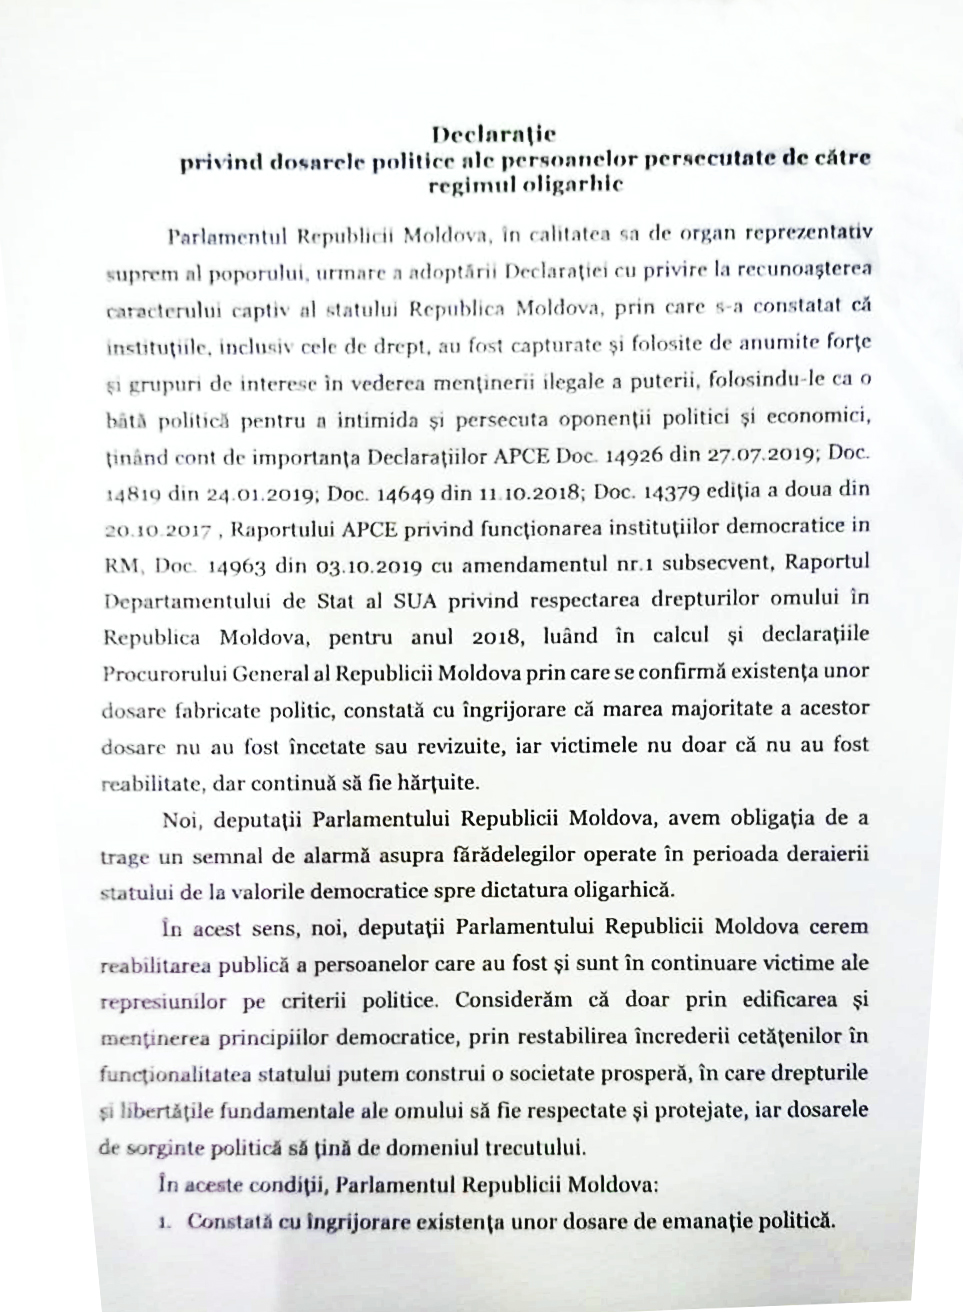 De revizuit, de reabilitat, de pedepsit. NM publică textul Declarației despre persecutările politice de către regimul oligarhic